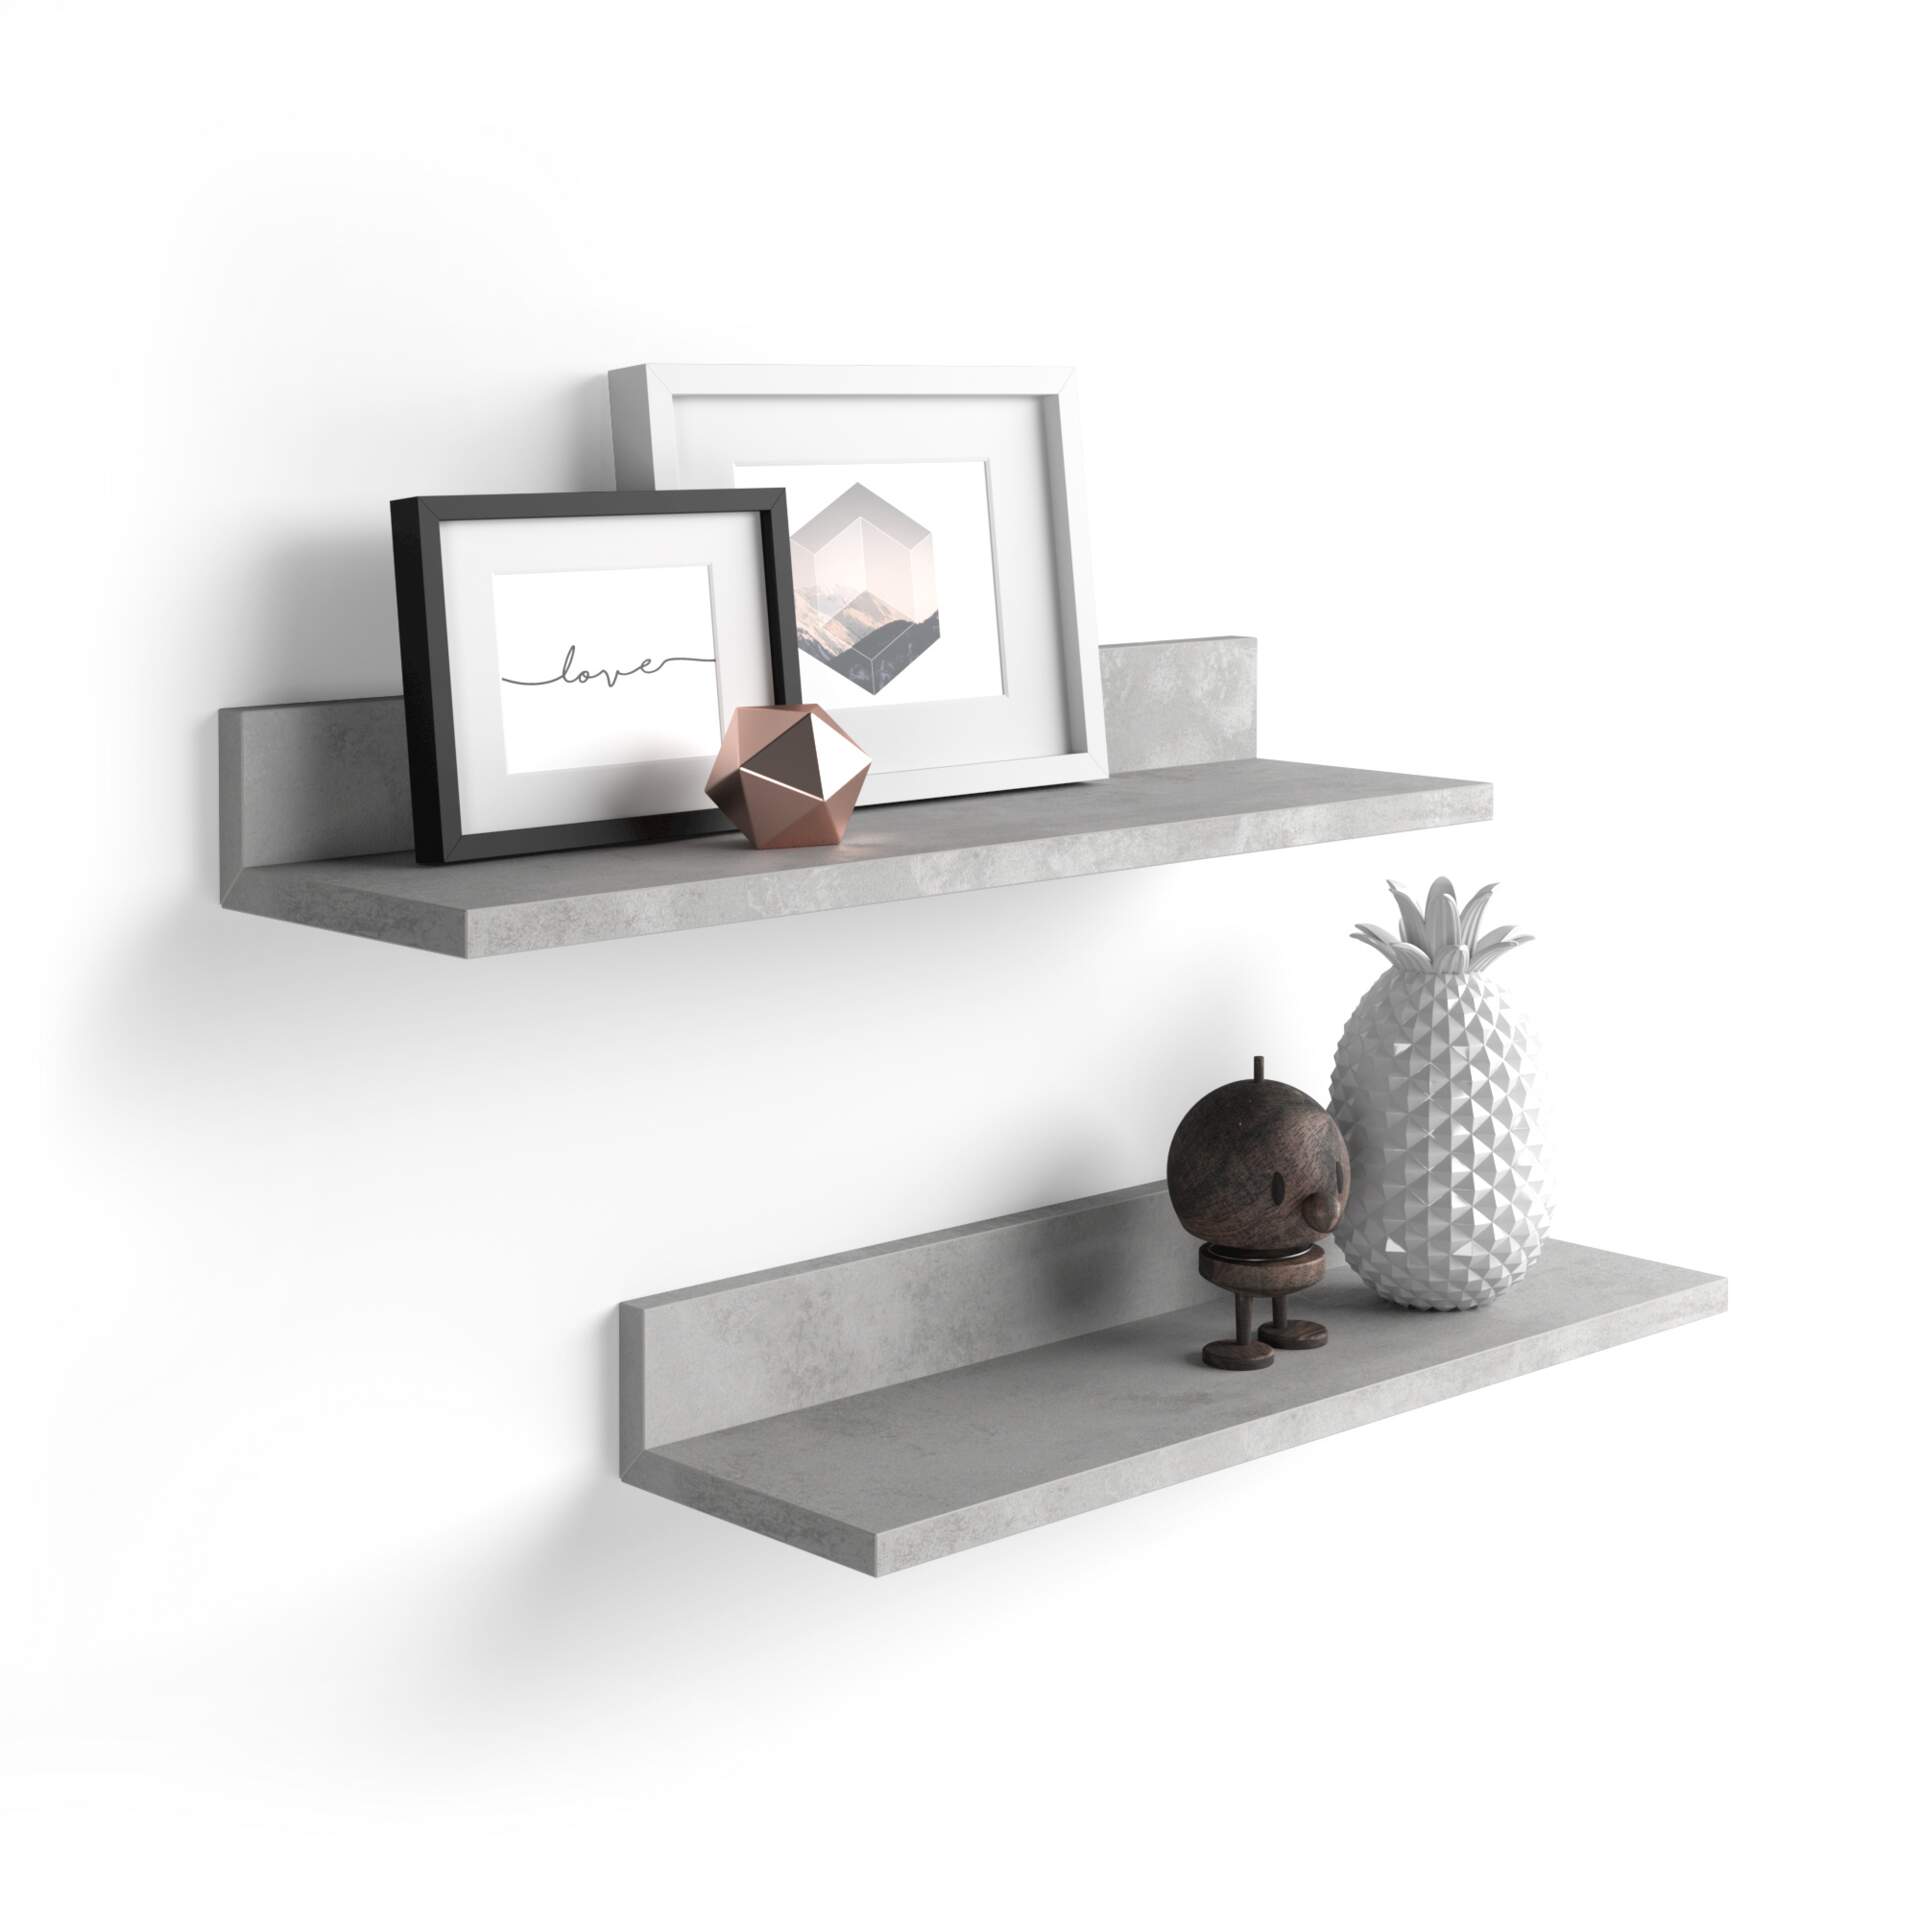 Mobili Fiver Par de estantes Rachele de 60 cm, color Cemento gris